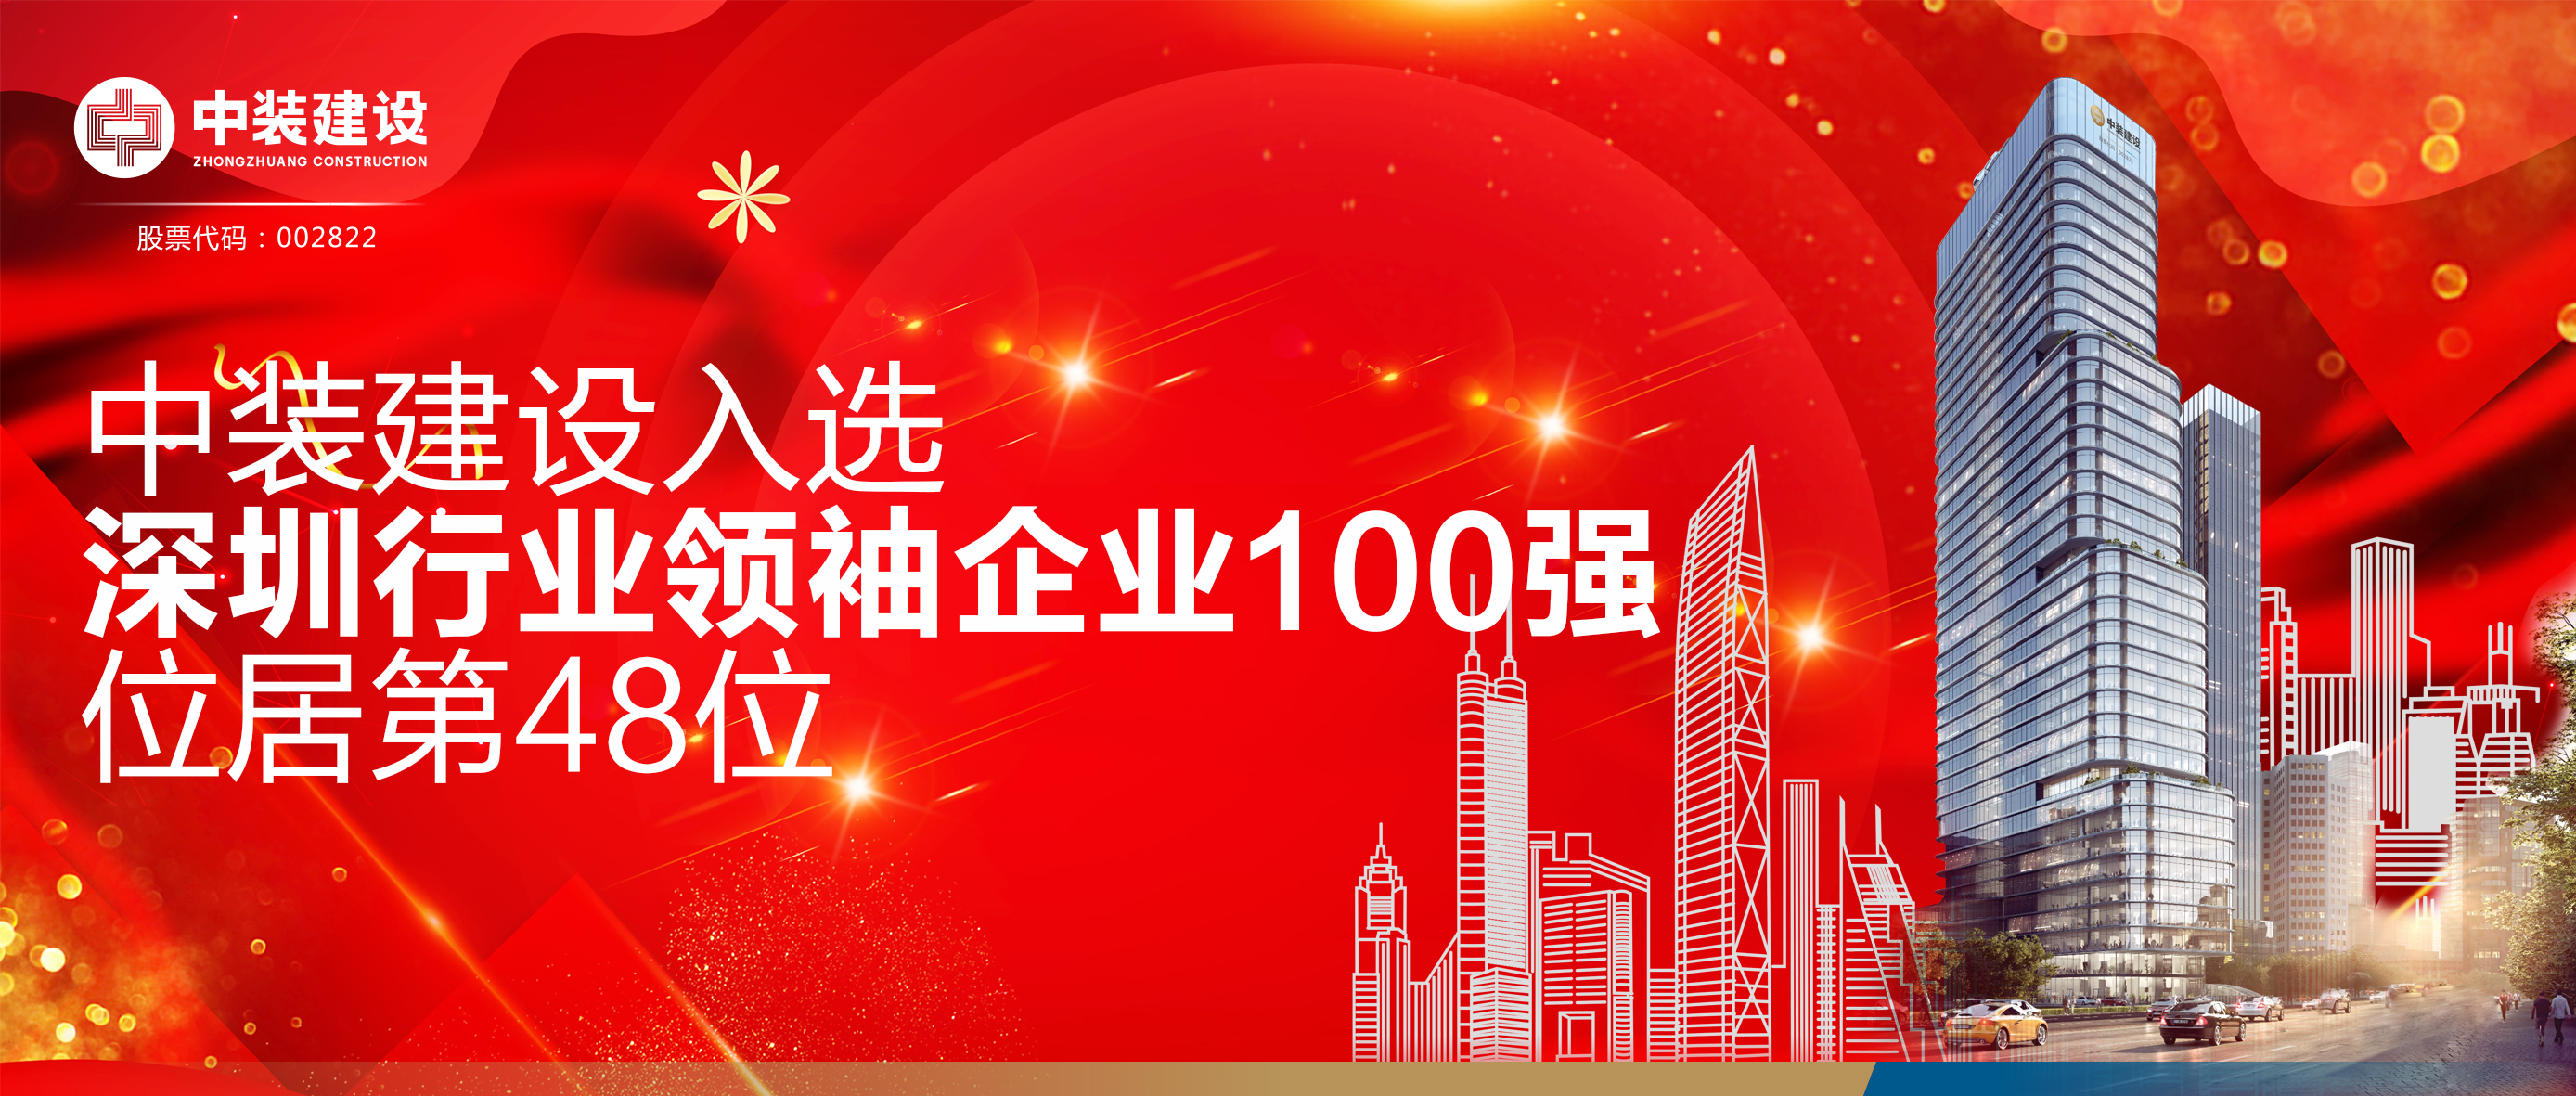 中装建设入选“深圳行业领袖企业100强”